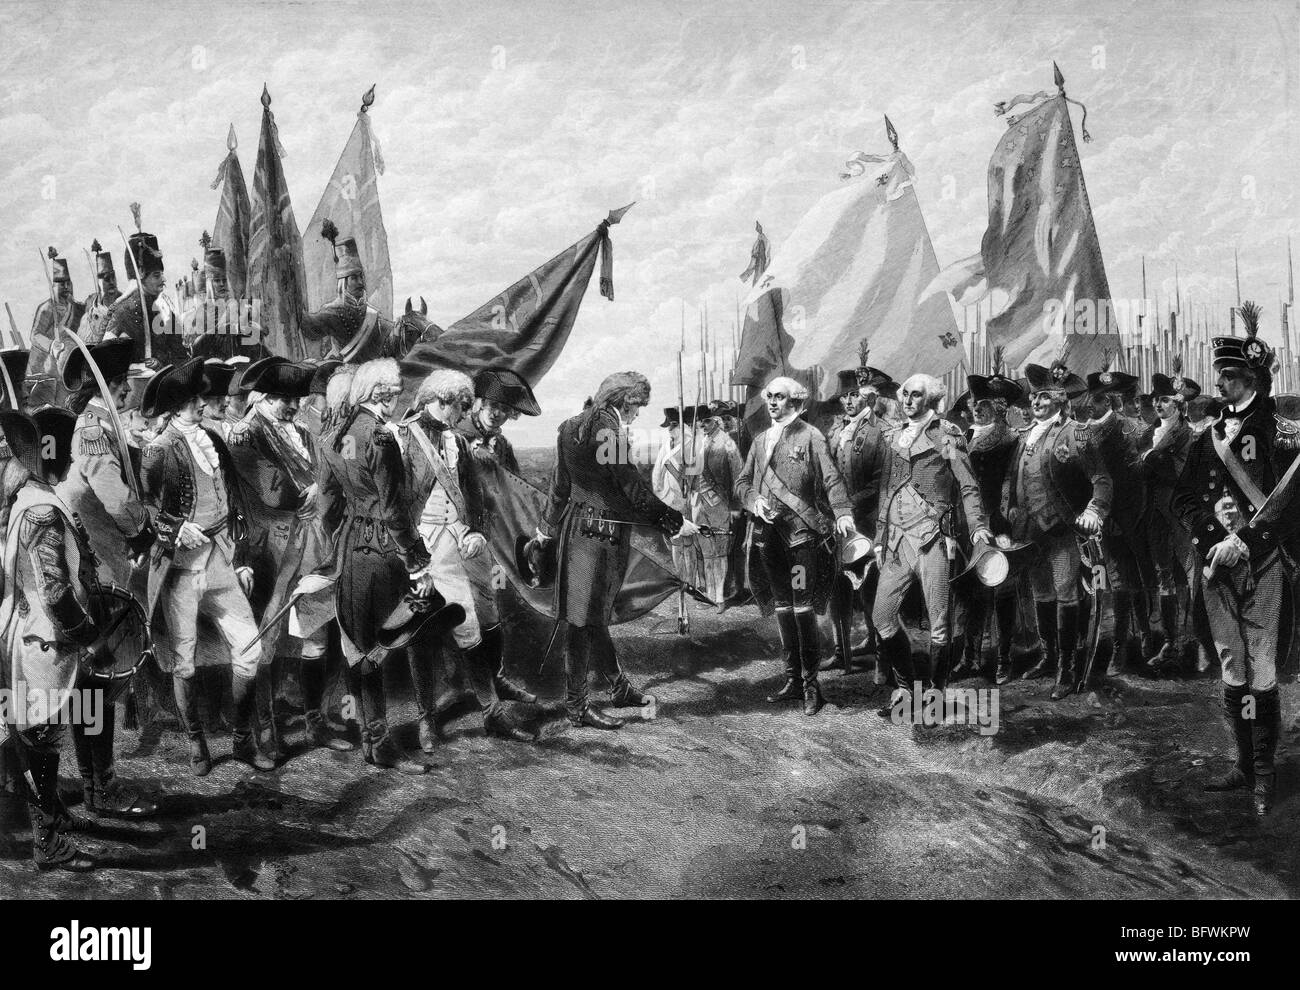 La stampa mostra la resa di Lord Cornwallis a George Washington e delle forze francesi in seguito all'assedio di Yorktown nel 1781. Foto Stock